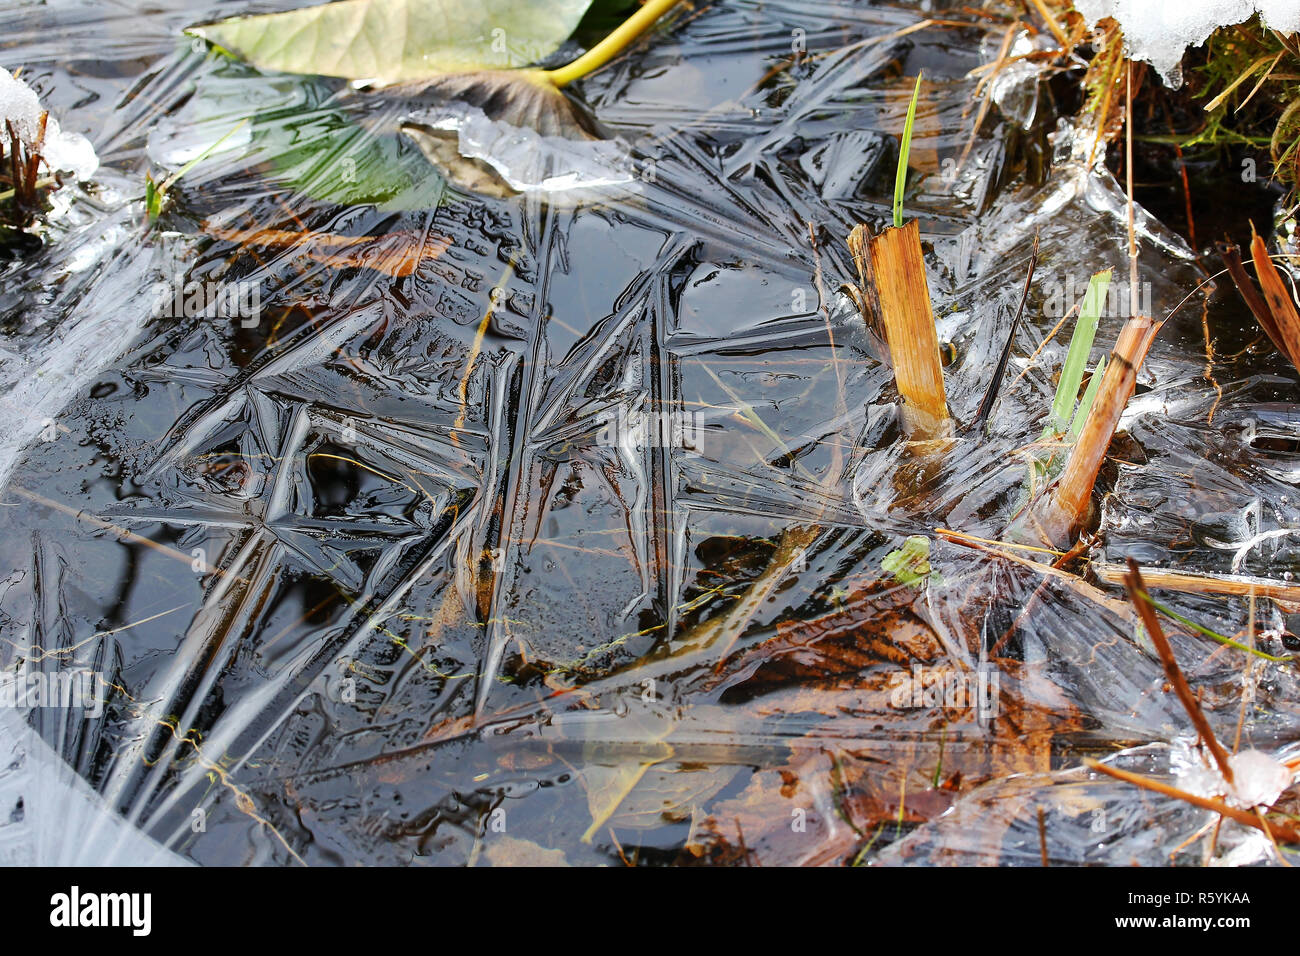 Un automne froid - feuilles congelés dans une flaque d'eau Banque D'Images